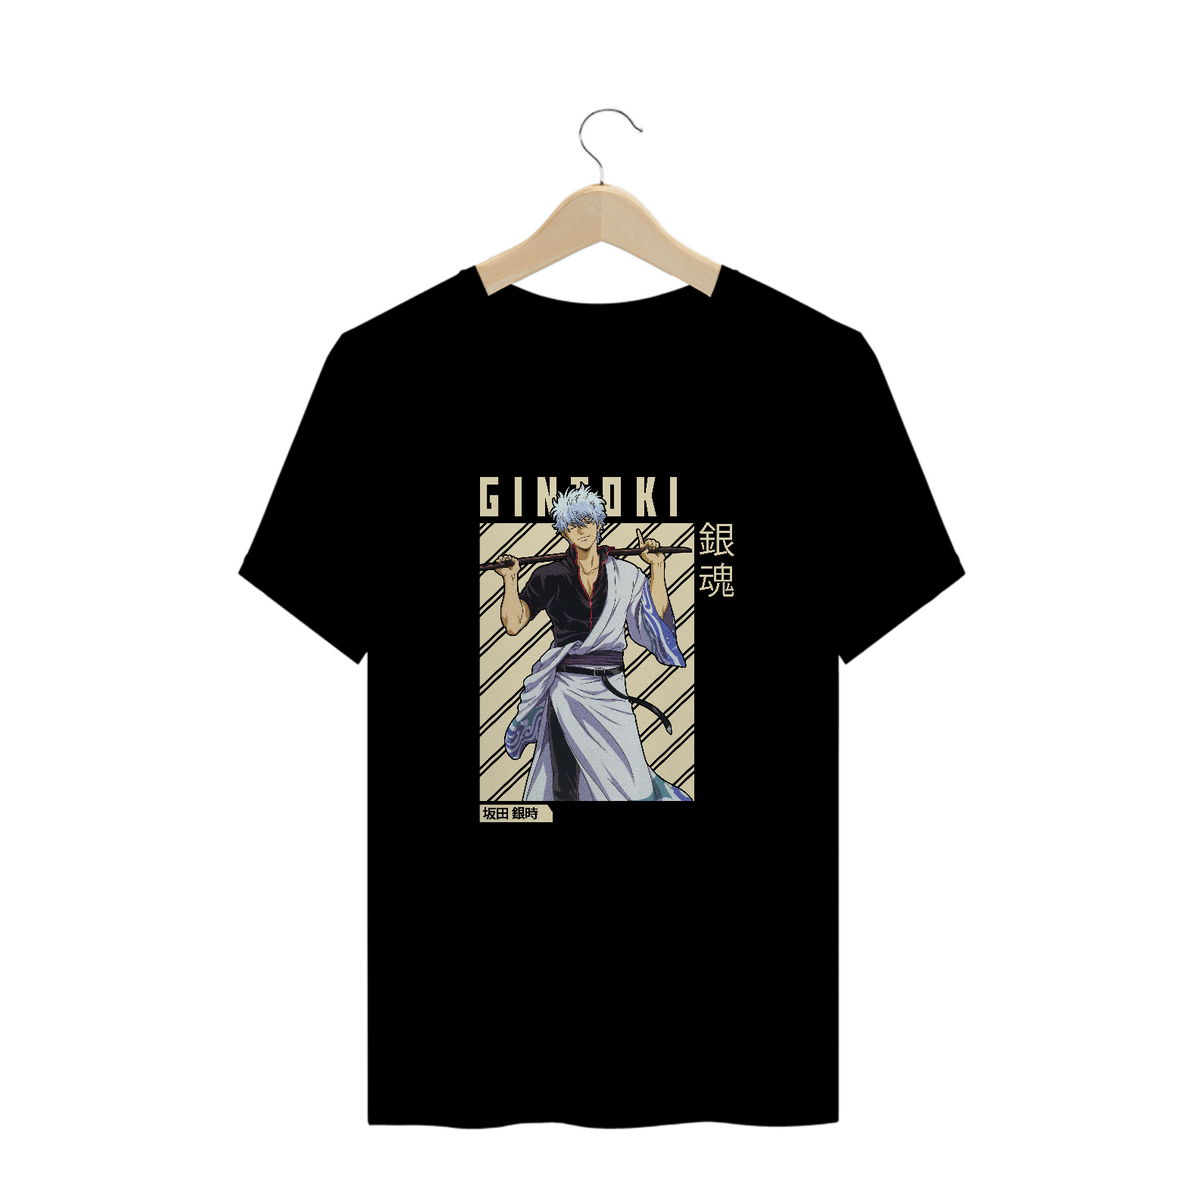 Nome do produto: Camisa Gintoki II